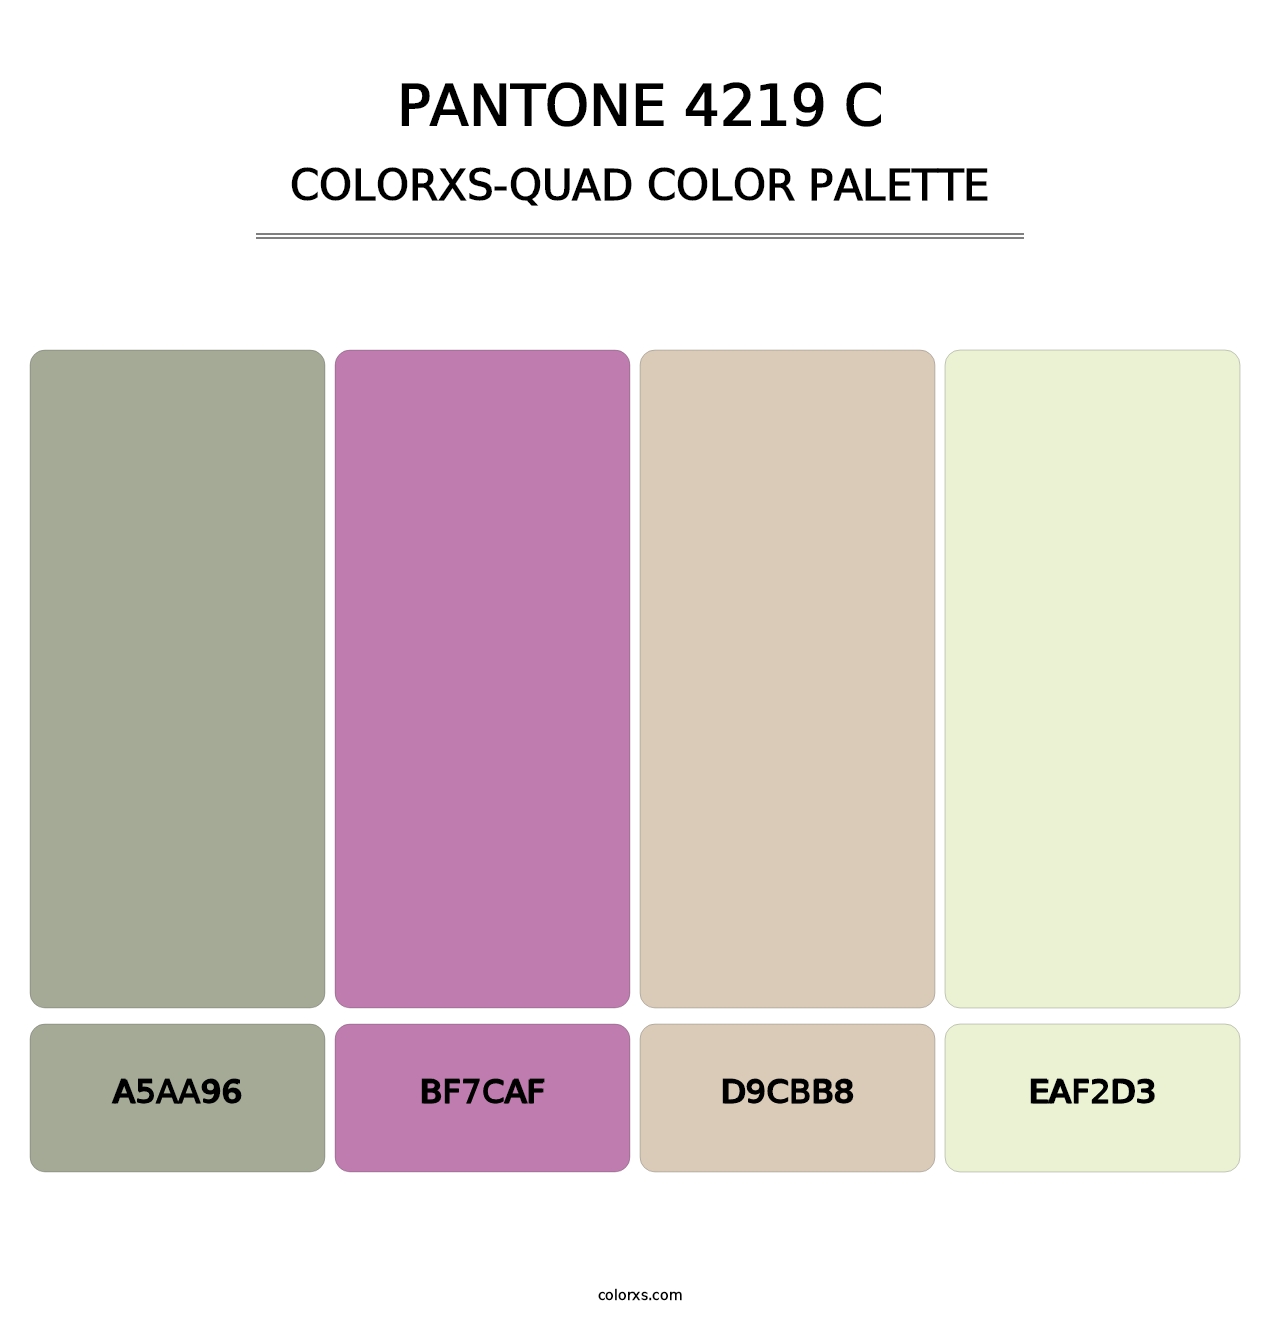 PANTONE 4219 C - Colorxs Quad Palette